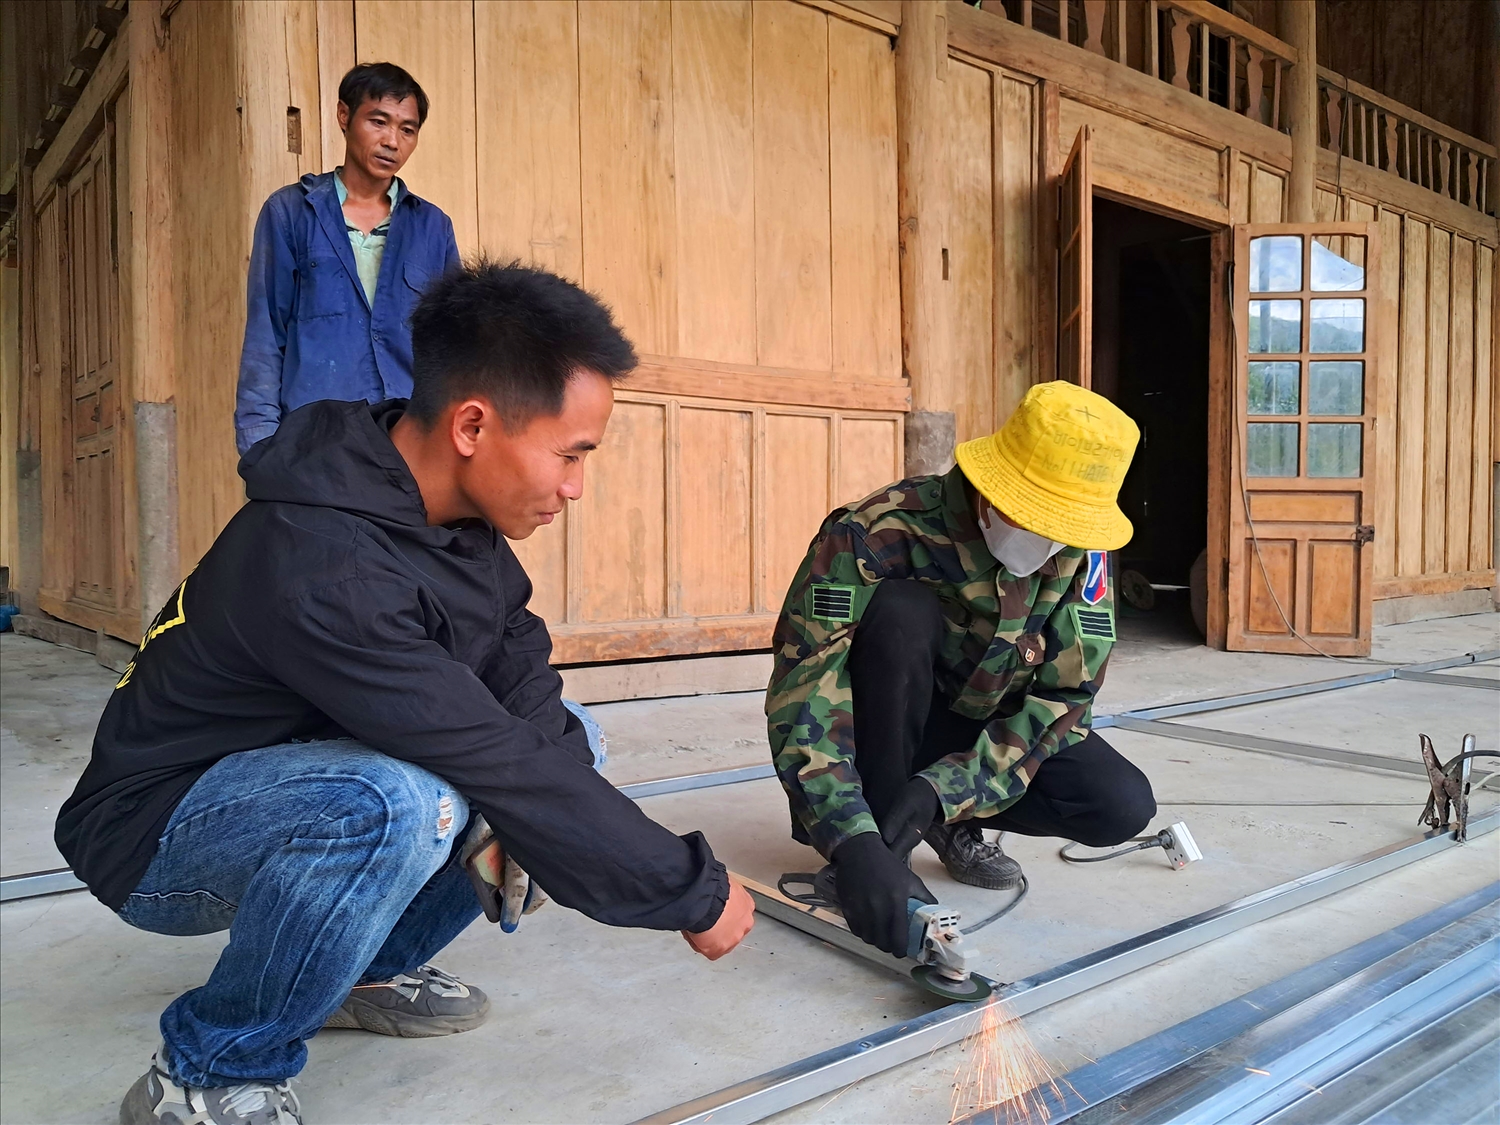 Hiện Moong Văn Sơn đã tạo việc làm cho hơn 10 lao động địa phương từ các dịch vụ cơ khí, vận tải và xây dựng.